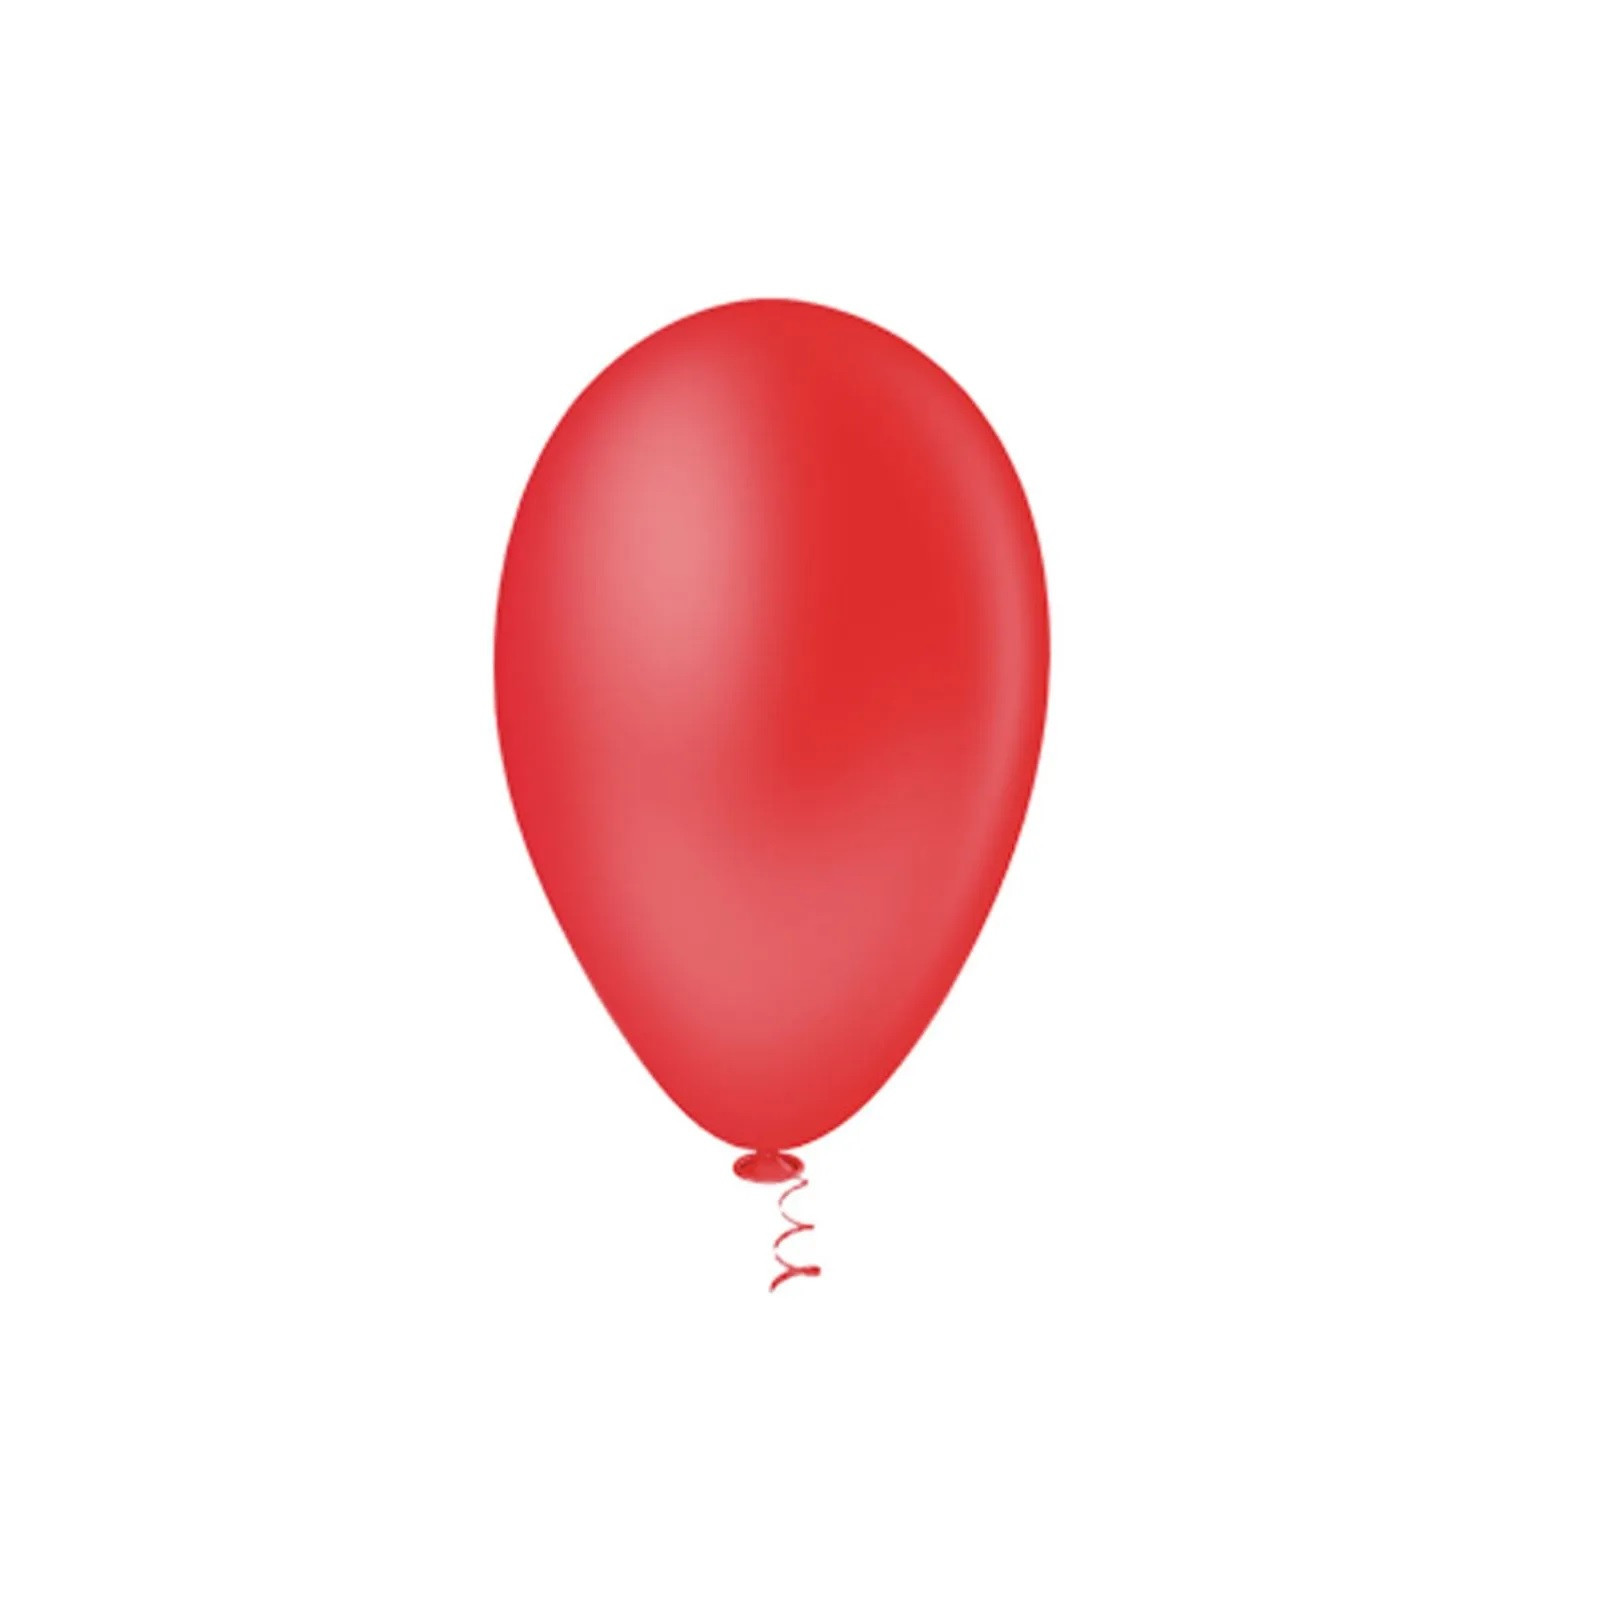 Balão Pera Liso Vermelho Nº6.5  c /50 unid - Pic Pic